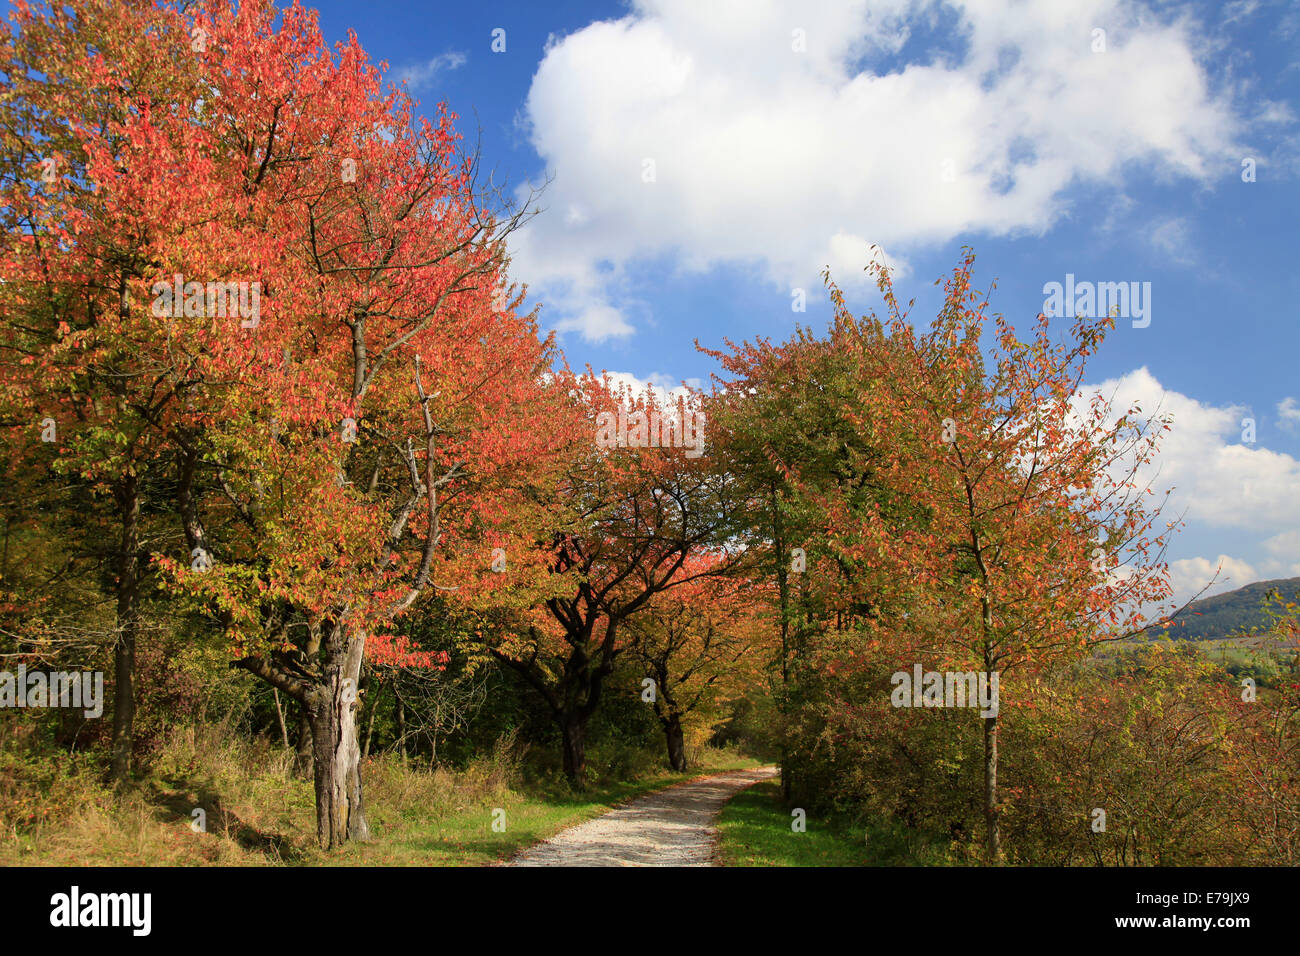 Buntes Herbstlaub an den Bäumen in der Rhön in der Nähe von Wiesenthal. Foto: Klaus Nowottnick Datum: 9. Oktober 2012 Stockfoto